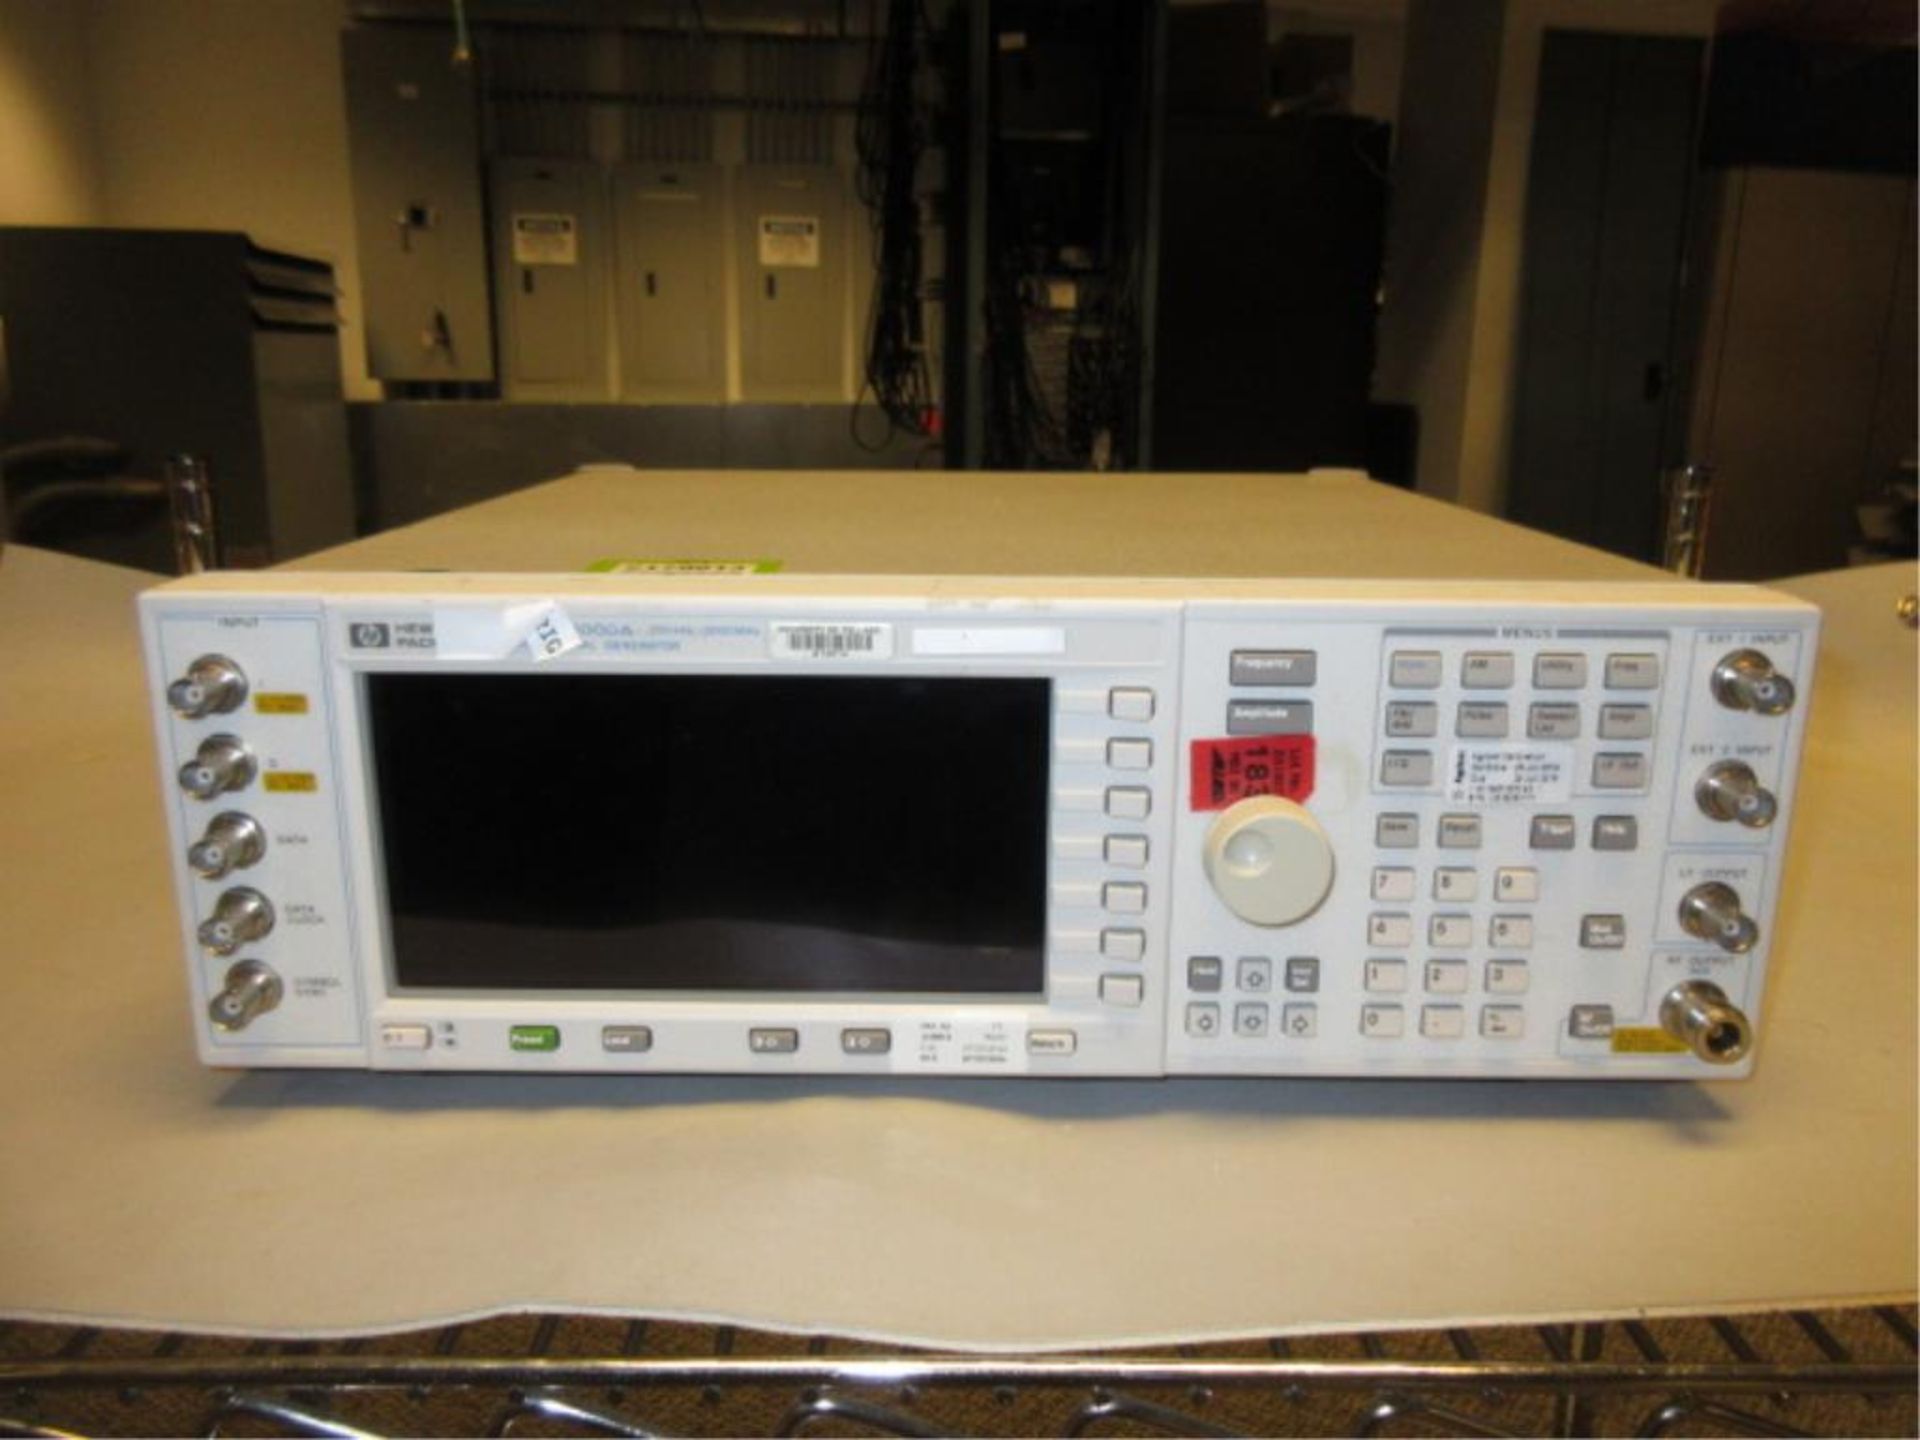 Hewlett Packard ESG-D3000A Digital Signal Generator. Digital Signal Generator, 250 kHz - 3000 MHz, - Image 2 of 3